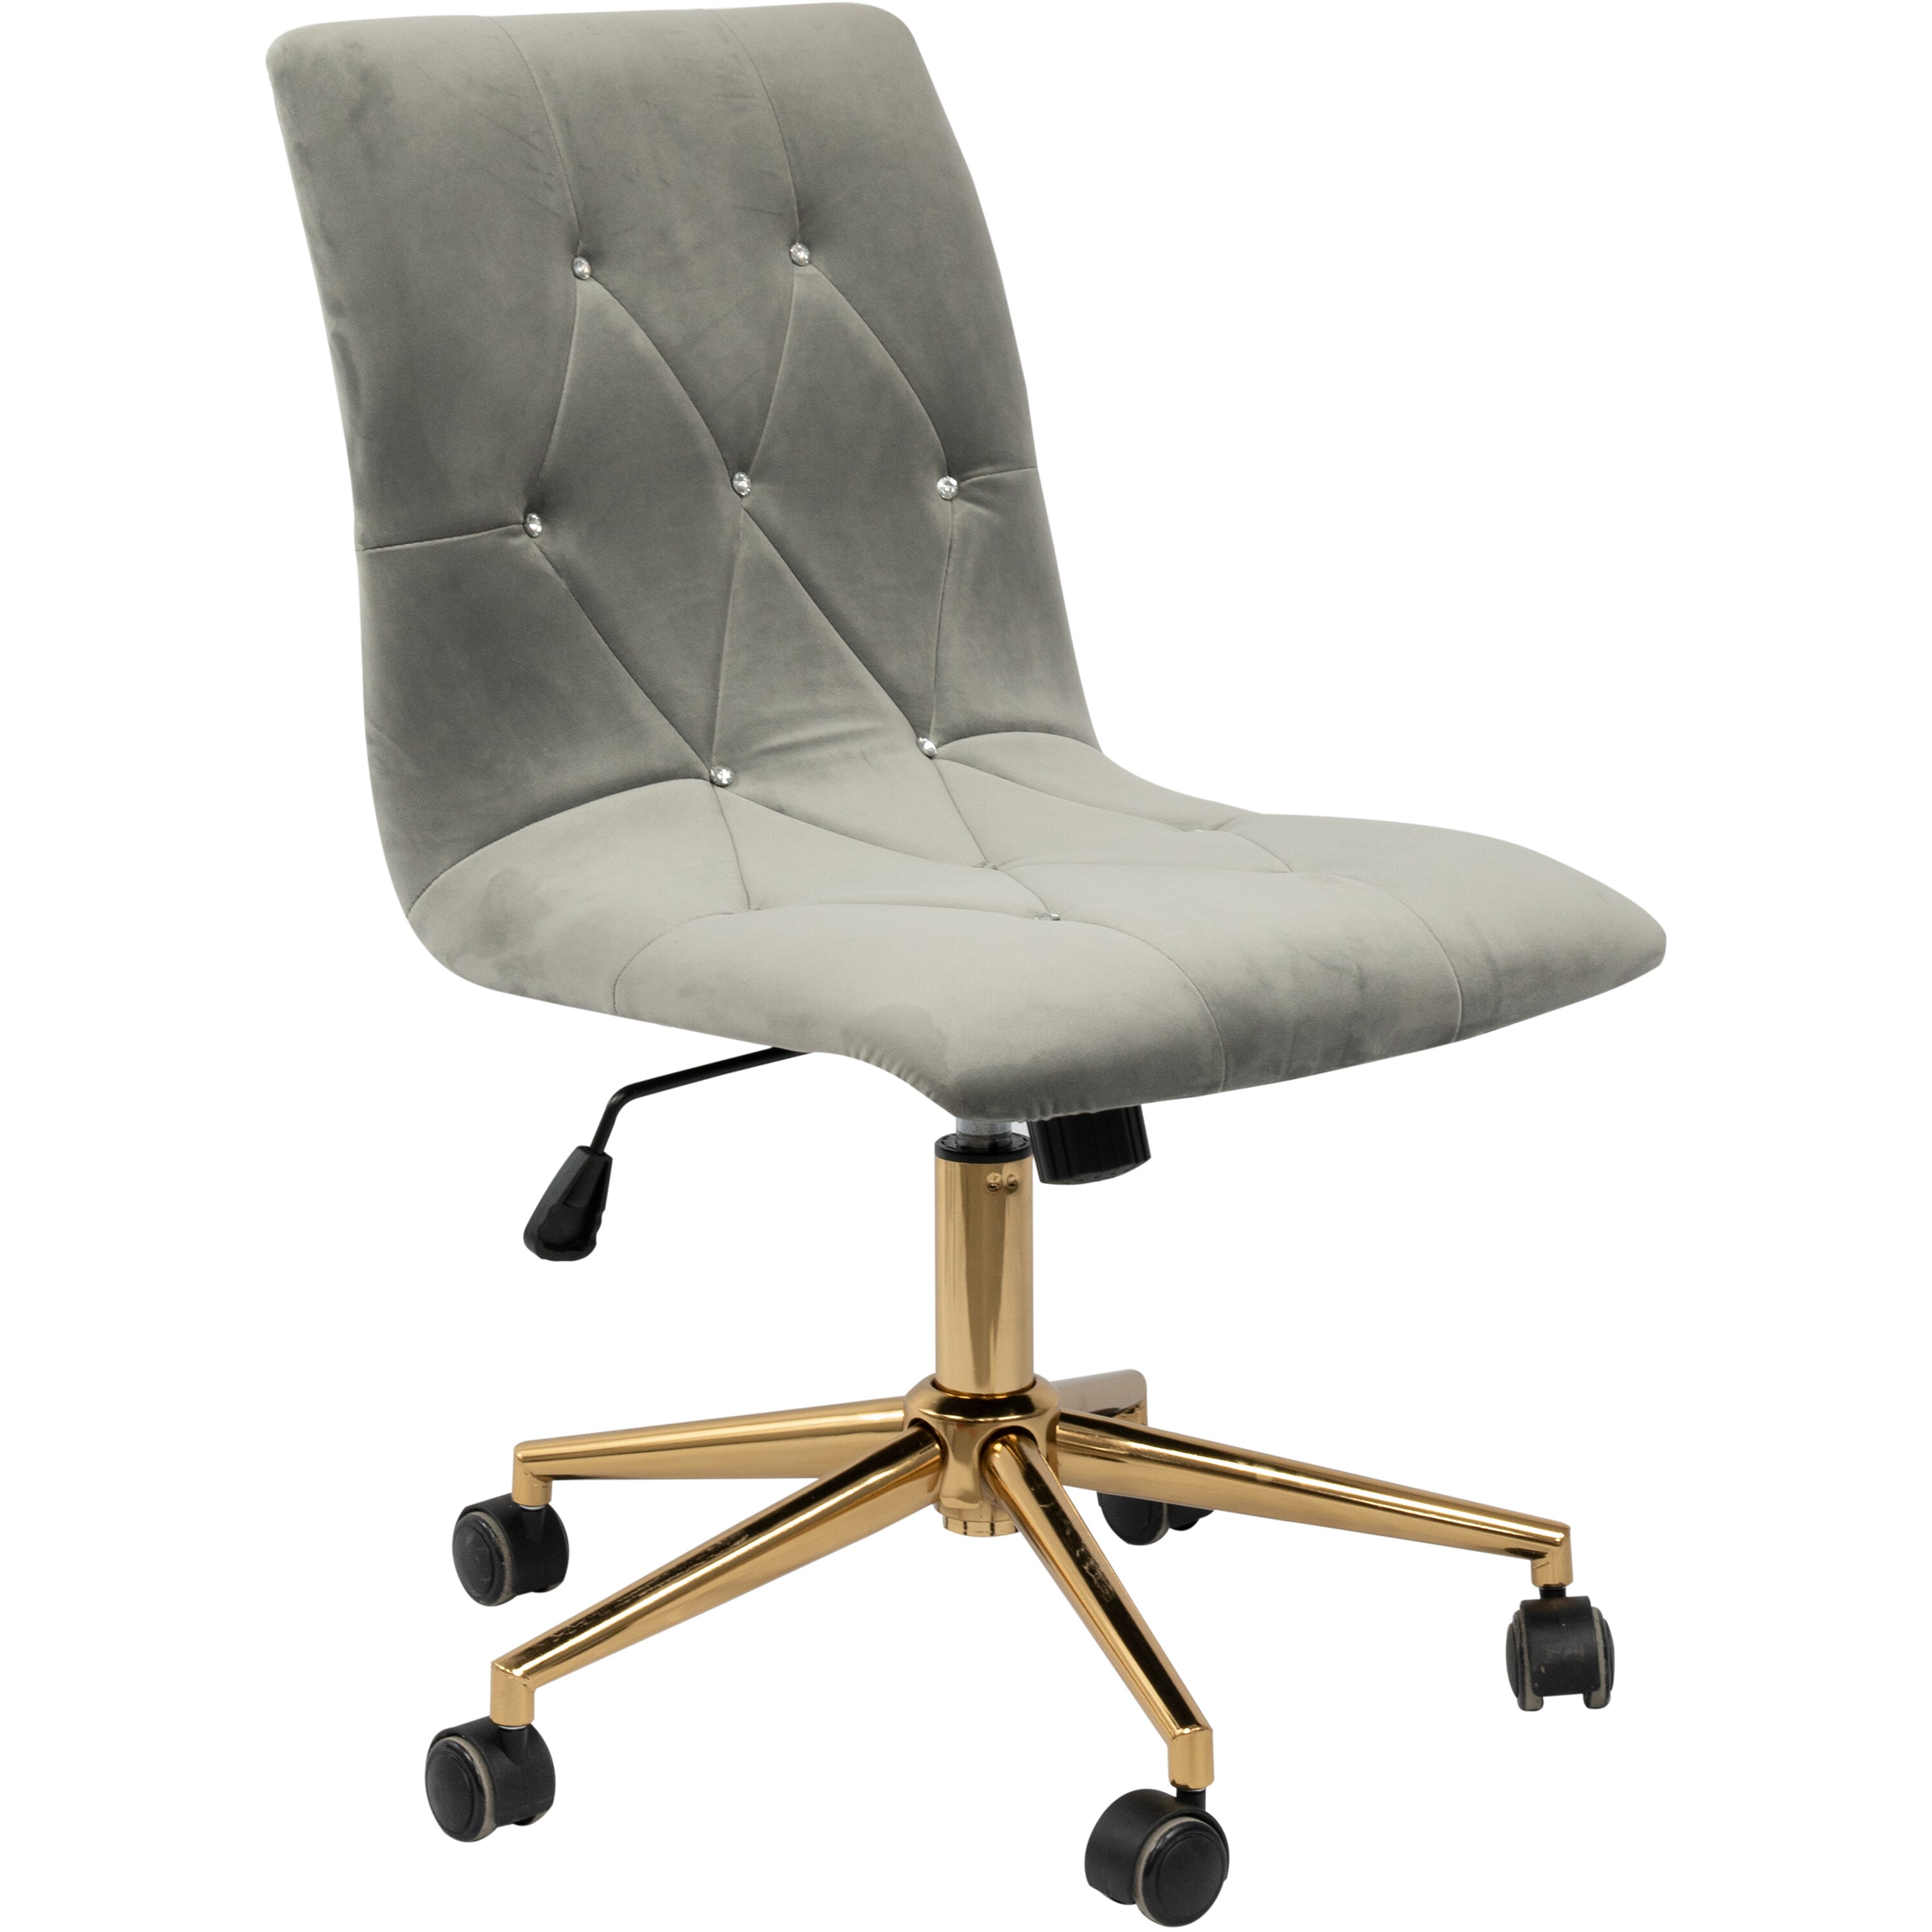 Velvet Adjustable Height Ergonomic Office Chair Armless Swivel